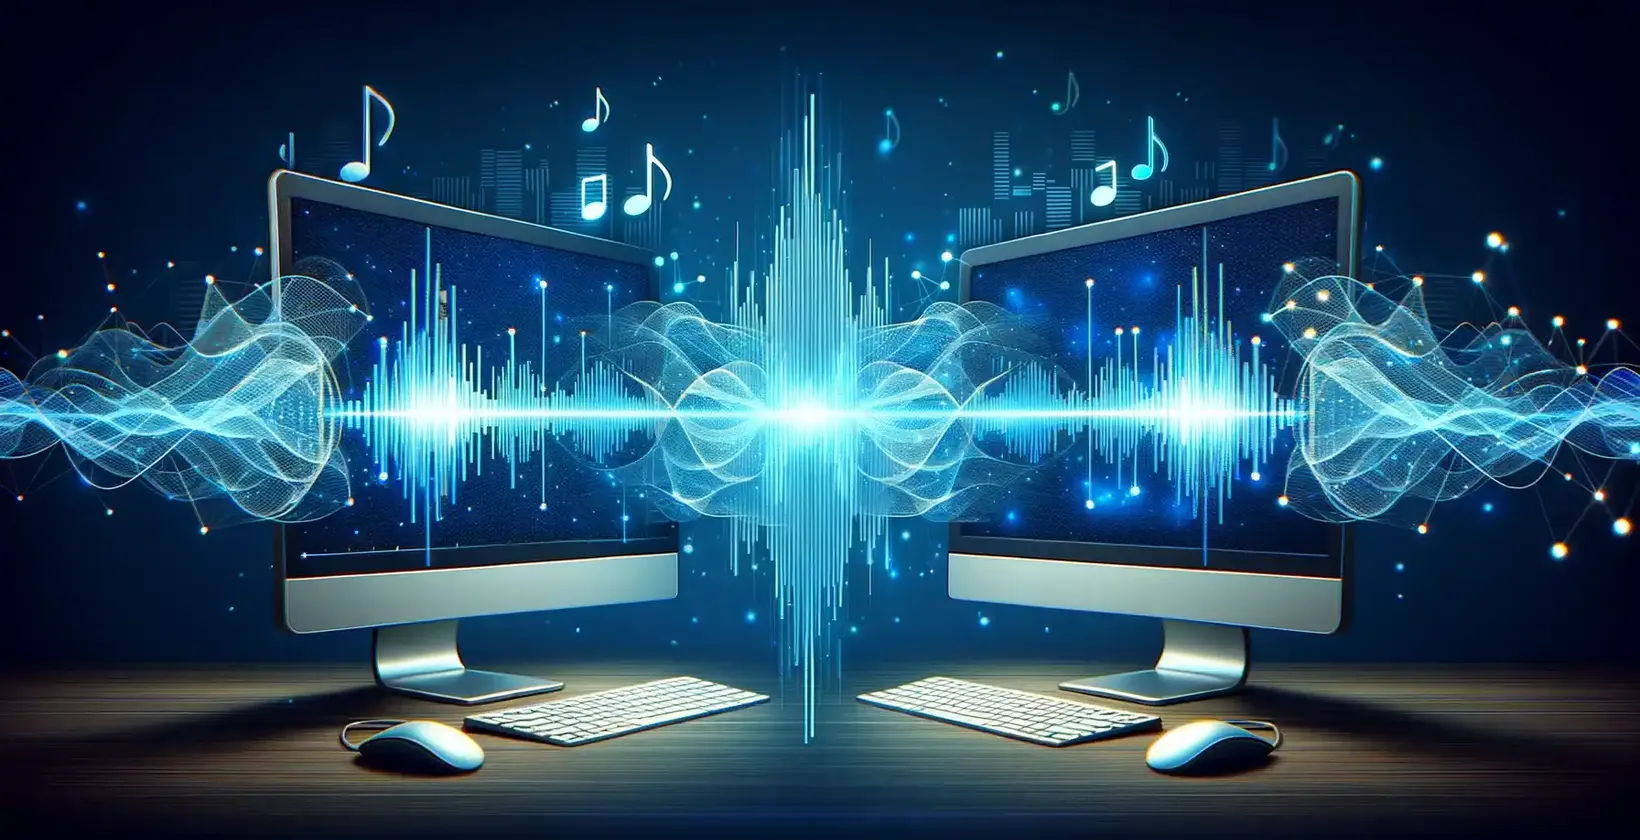 Divi datora ekrāni ar mūzikas notīm un skaņas viļņiem, kas ilustrē audio vizualizāciju.